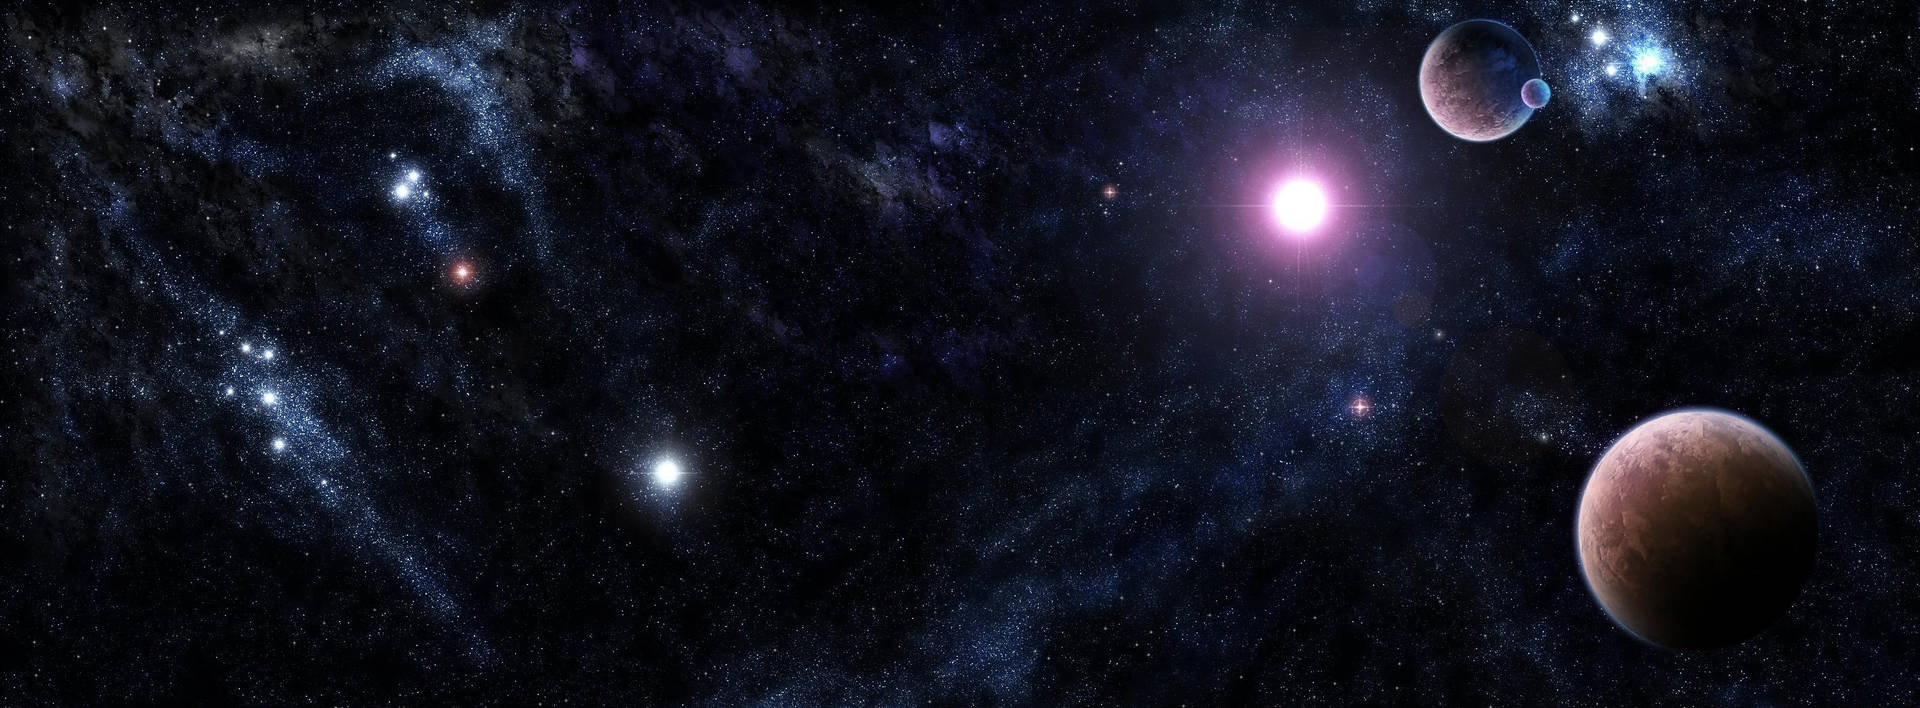 Dark Galaxy In Universe Background